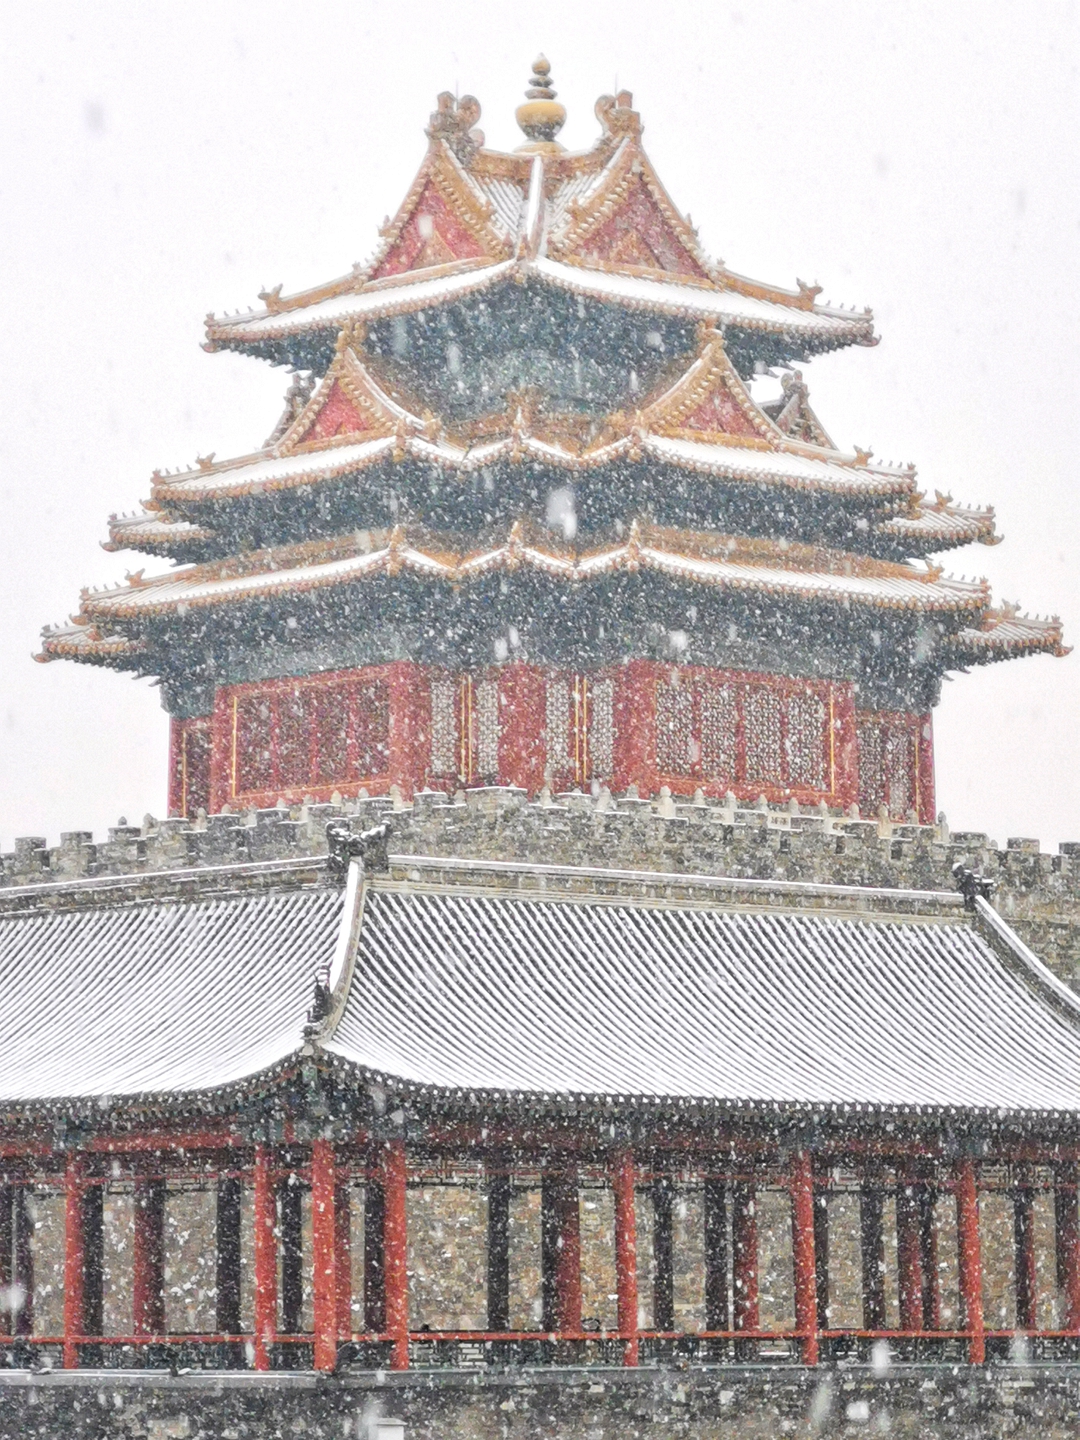 37 世界文化遗产:北京故宫,六百年巍巍紫禁城